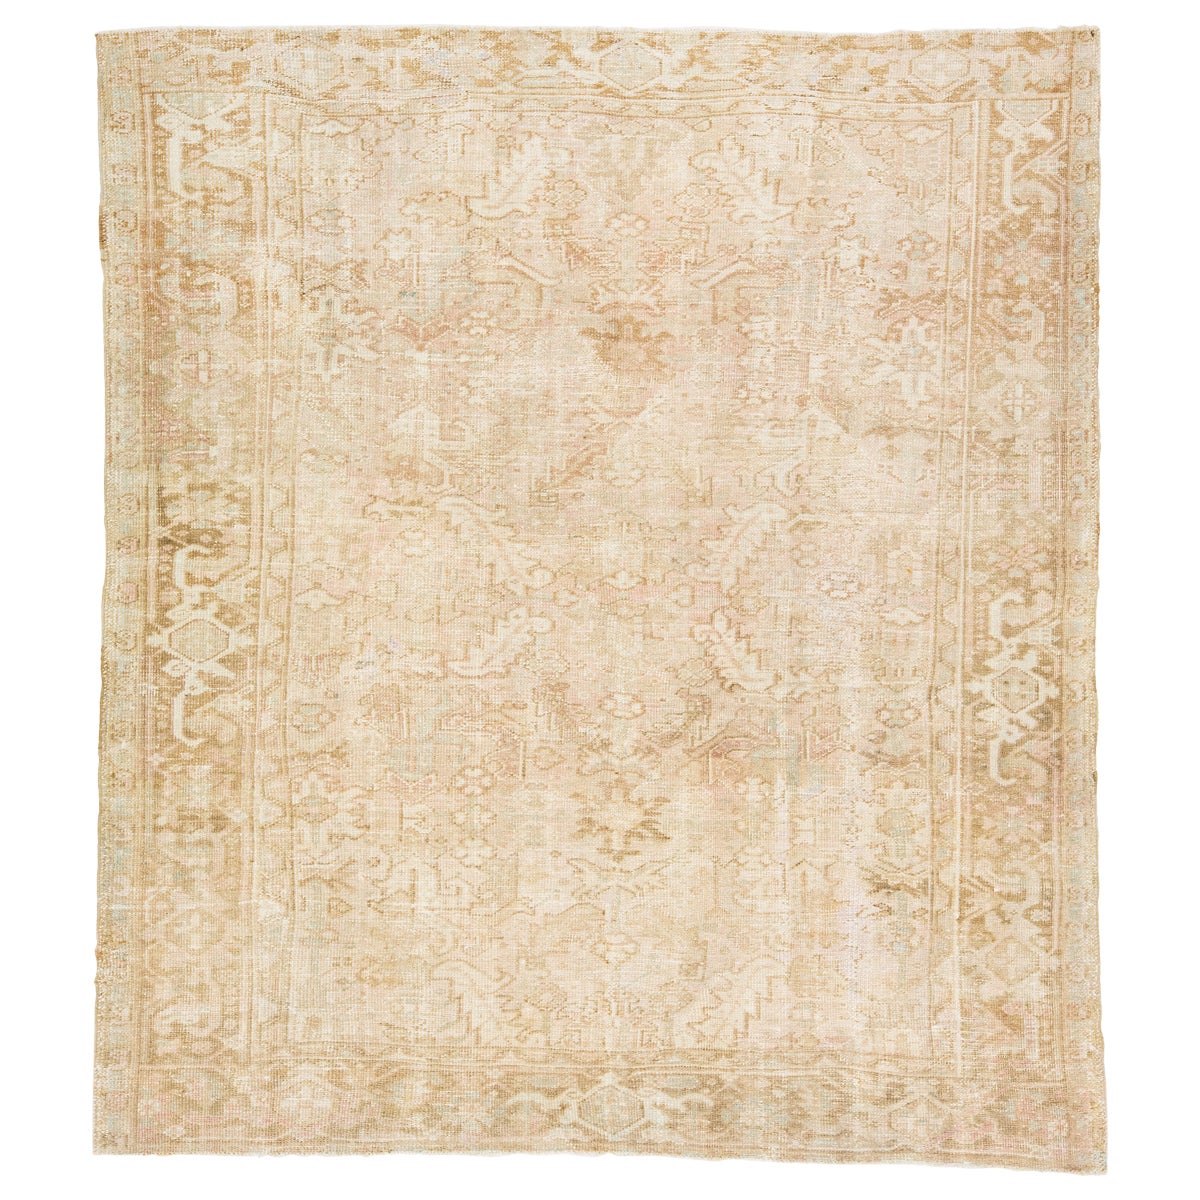 1920s Handmade Persian Heriz Beige Wool Rug with Allover Motif